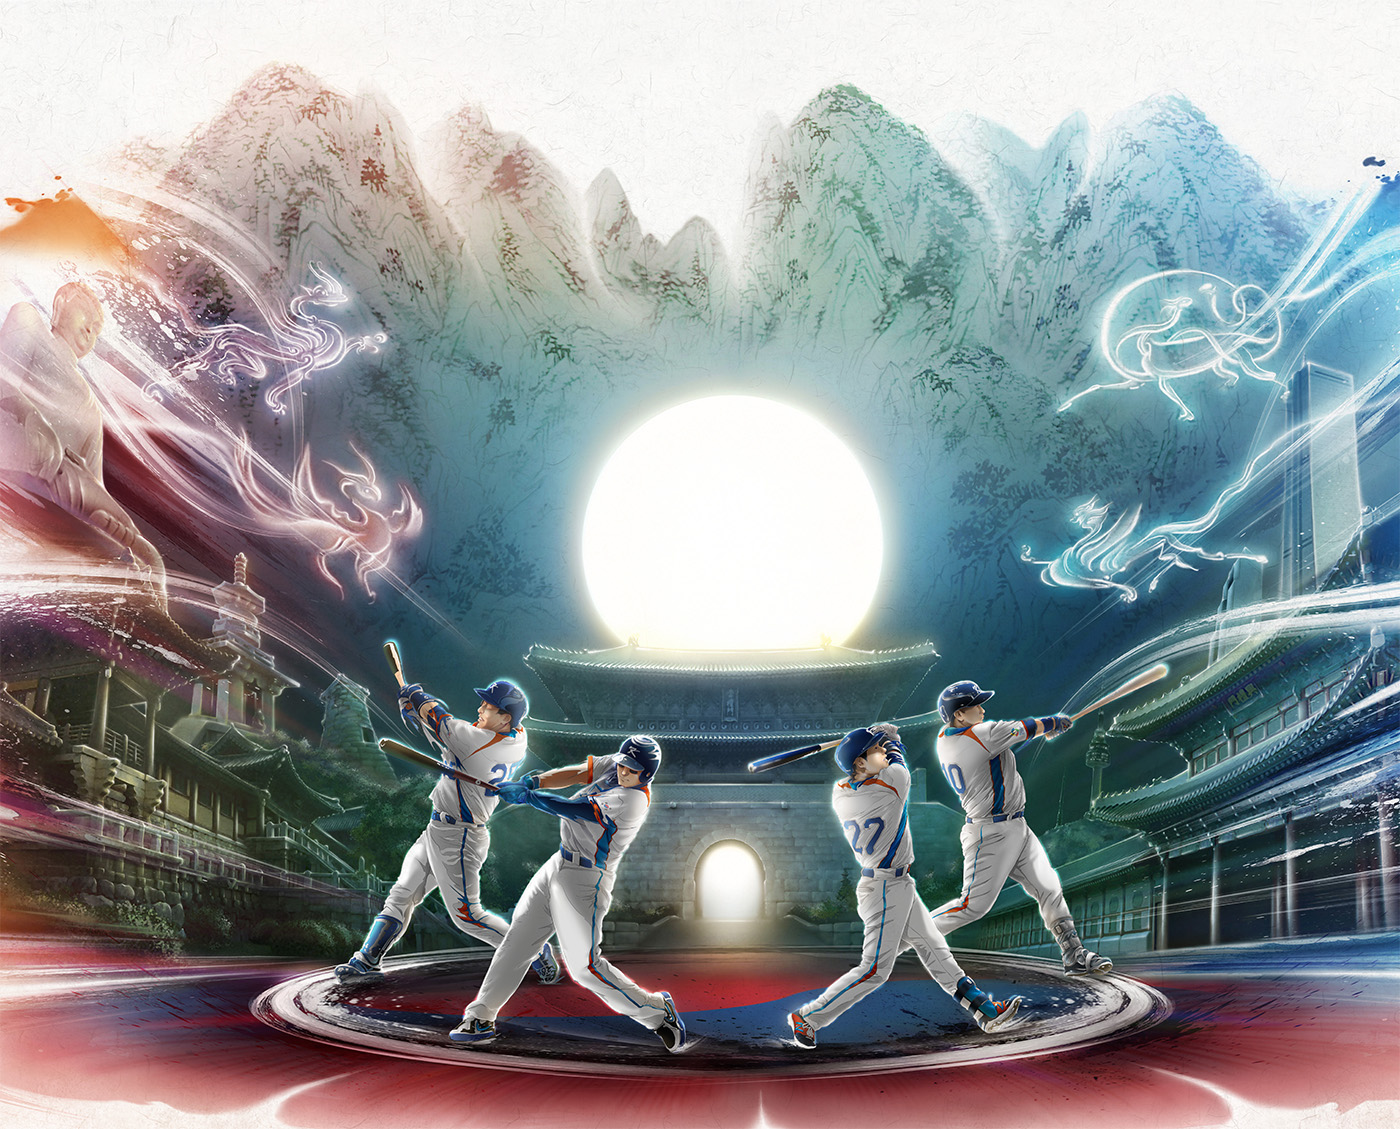 kazepark Korea artist sports baseball ESPN koreaartist WBC kaze park